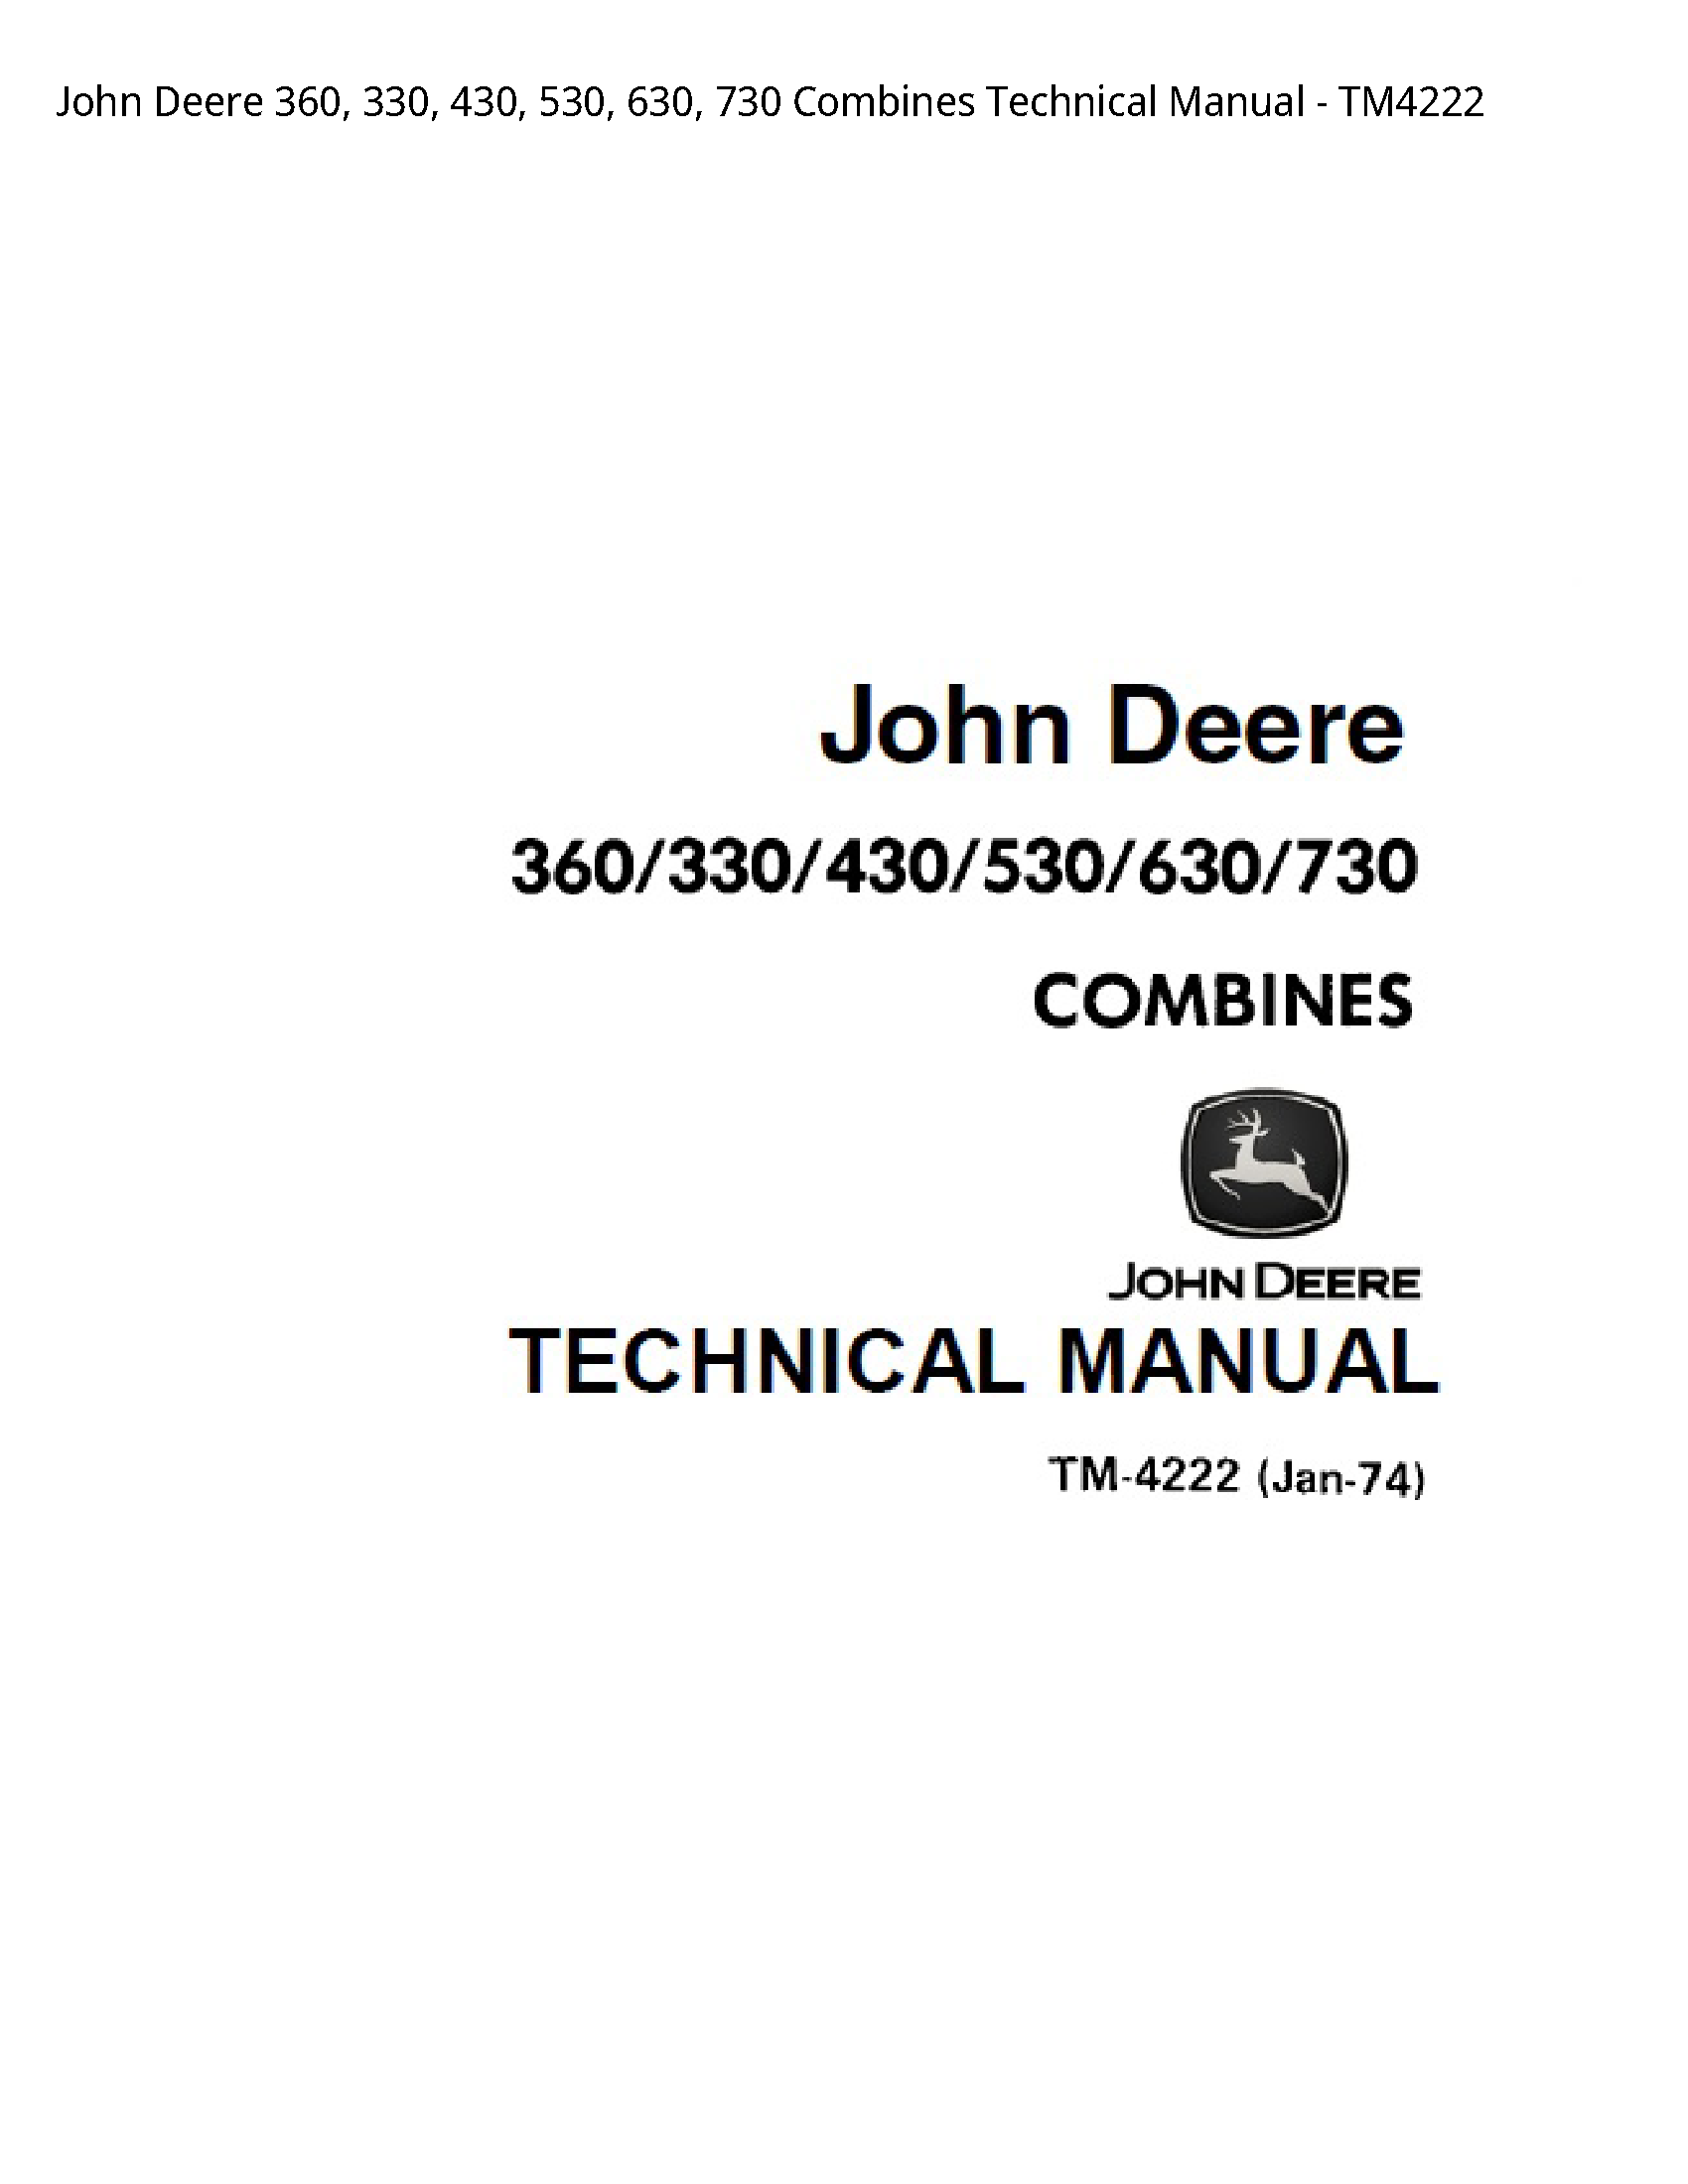 John Deere 360 Combines Technical manual